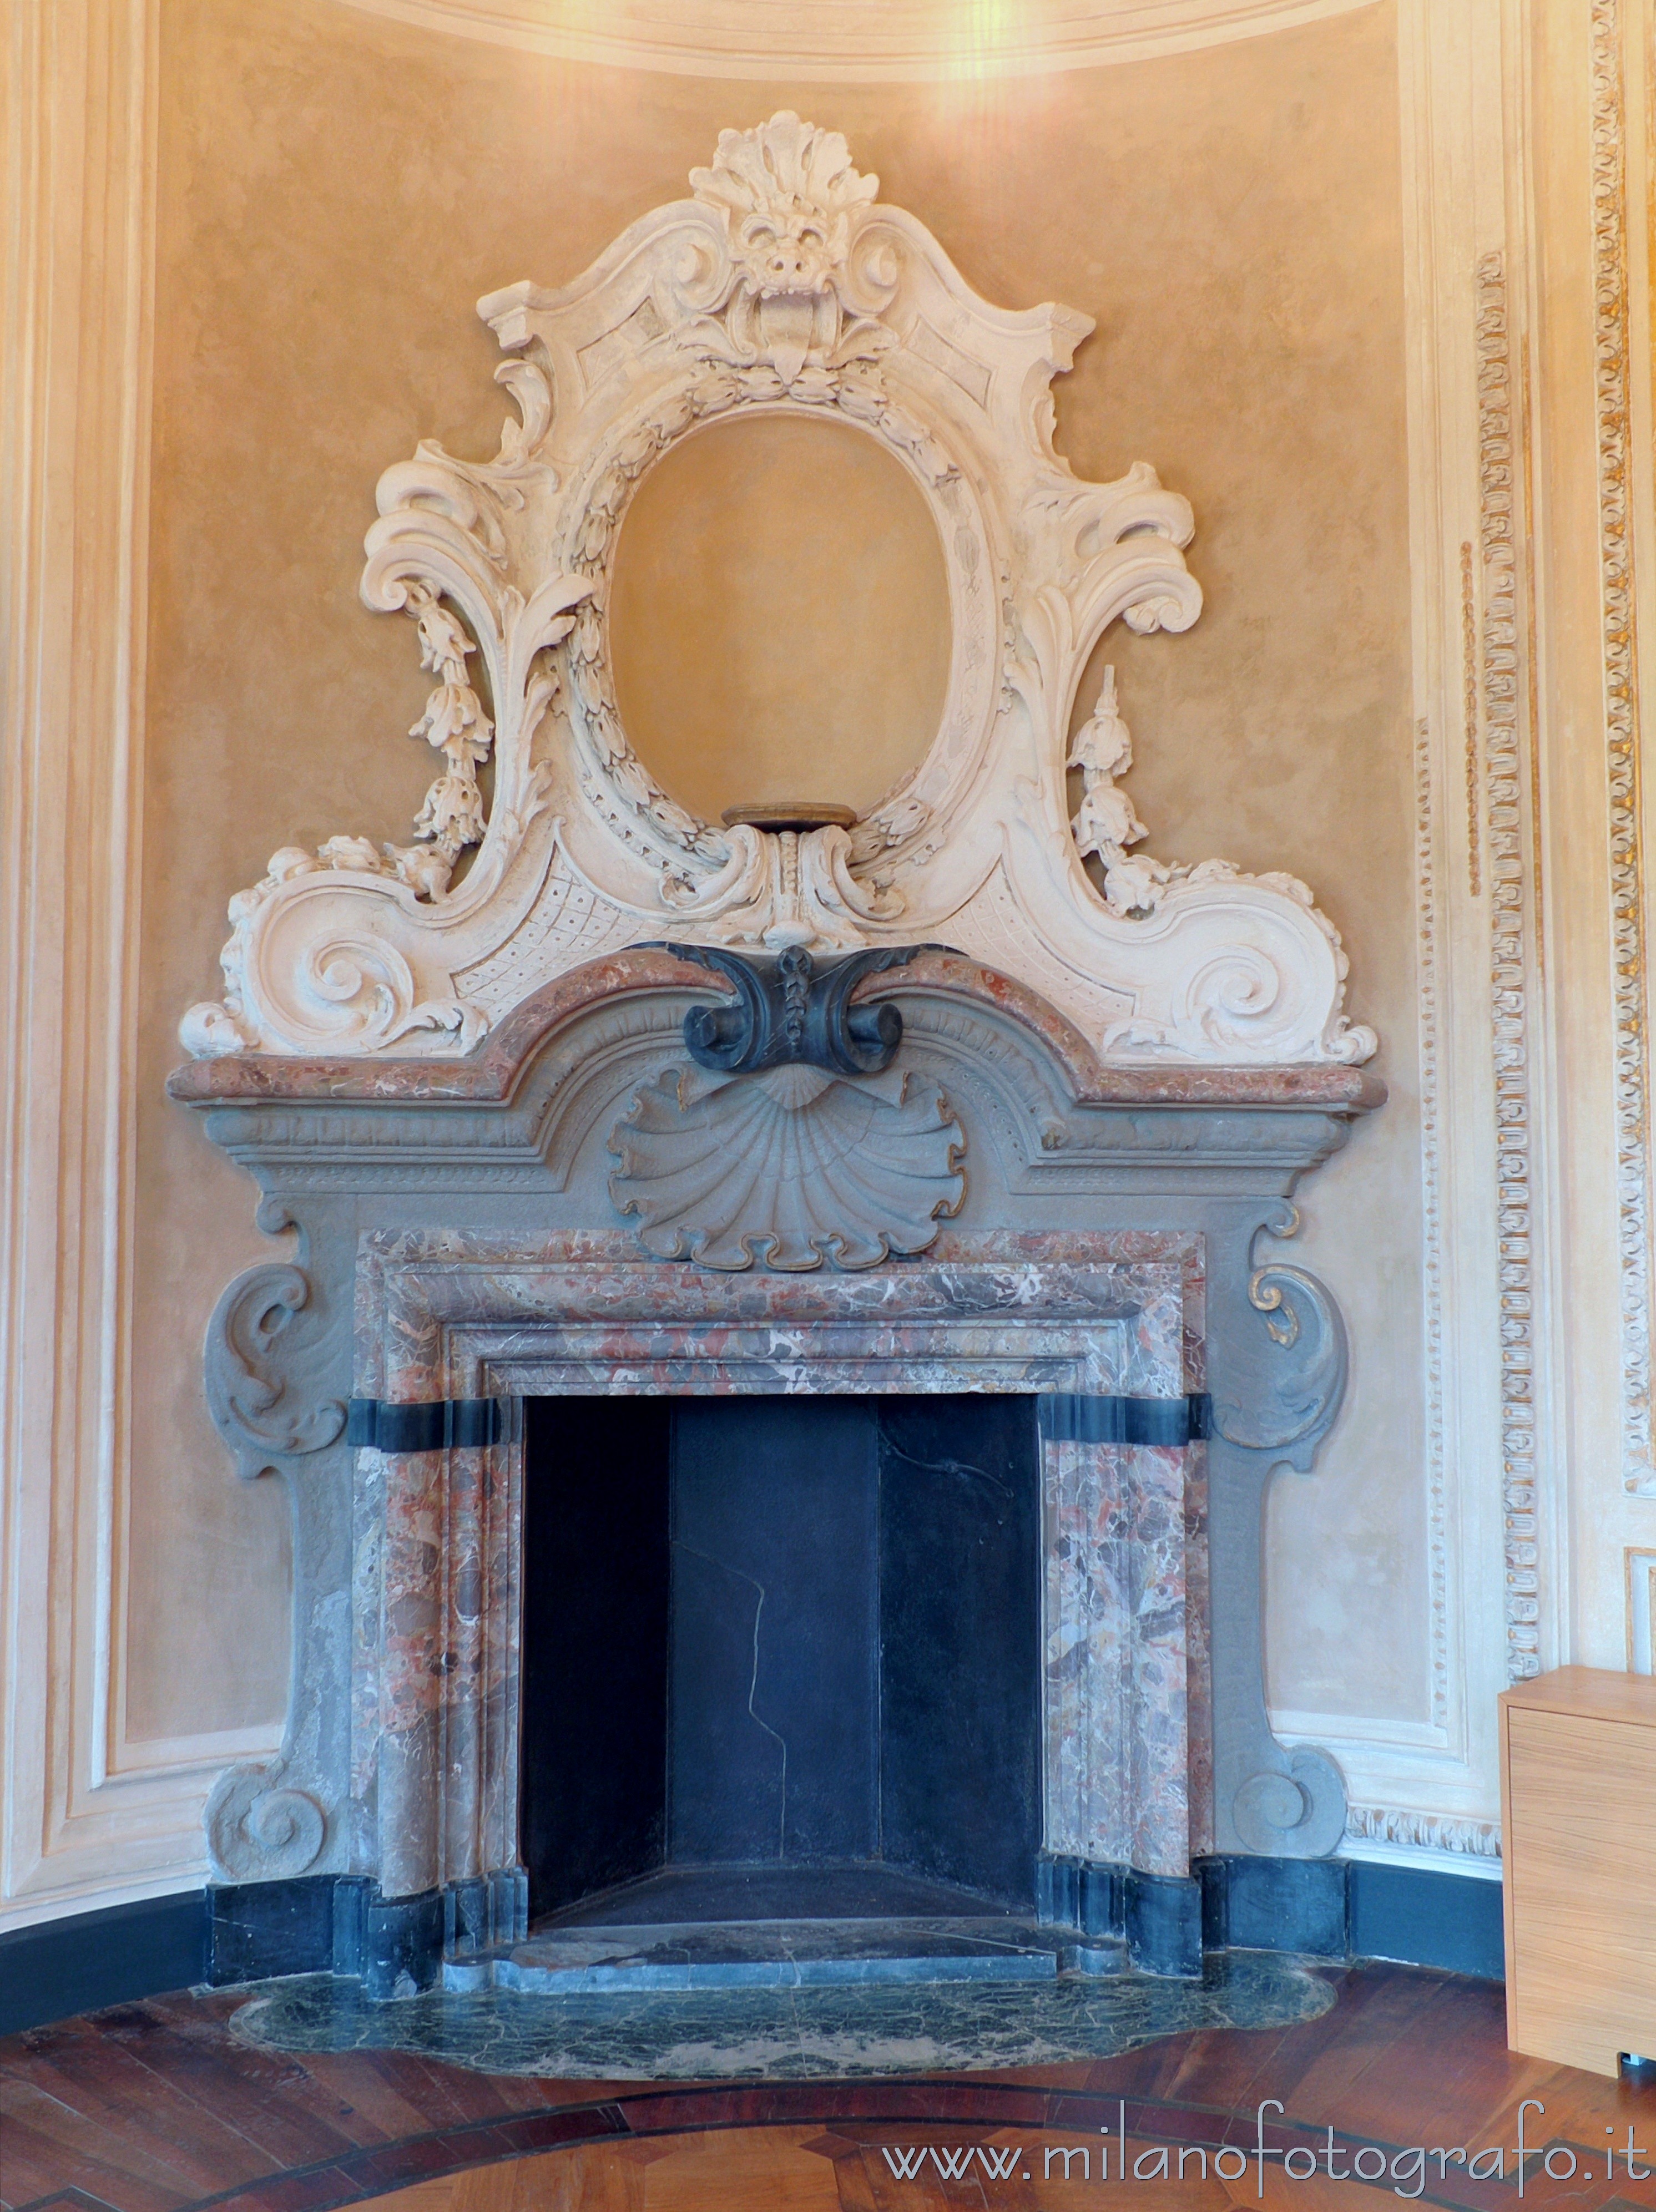 Arcore (Monza e Brianza, Italy): Neorococò fireplace in the main hall of Villa Borromeo d'Adda - Arcore (Monza e Brianza, Italy)